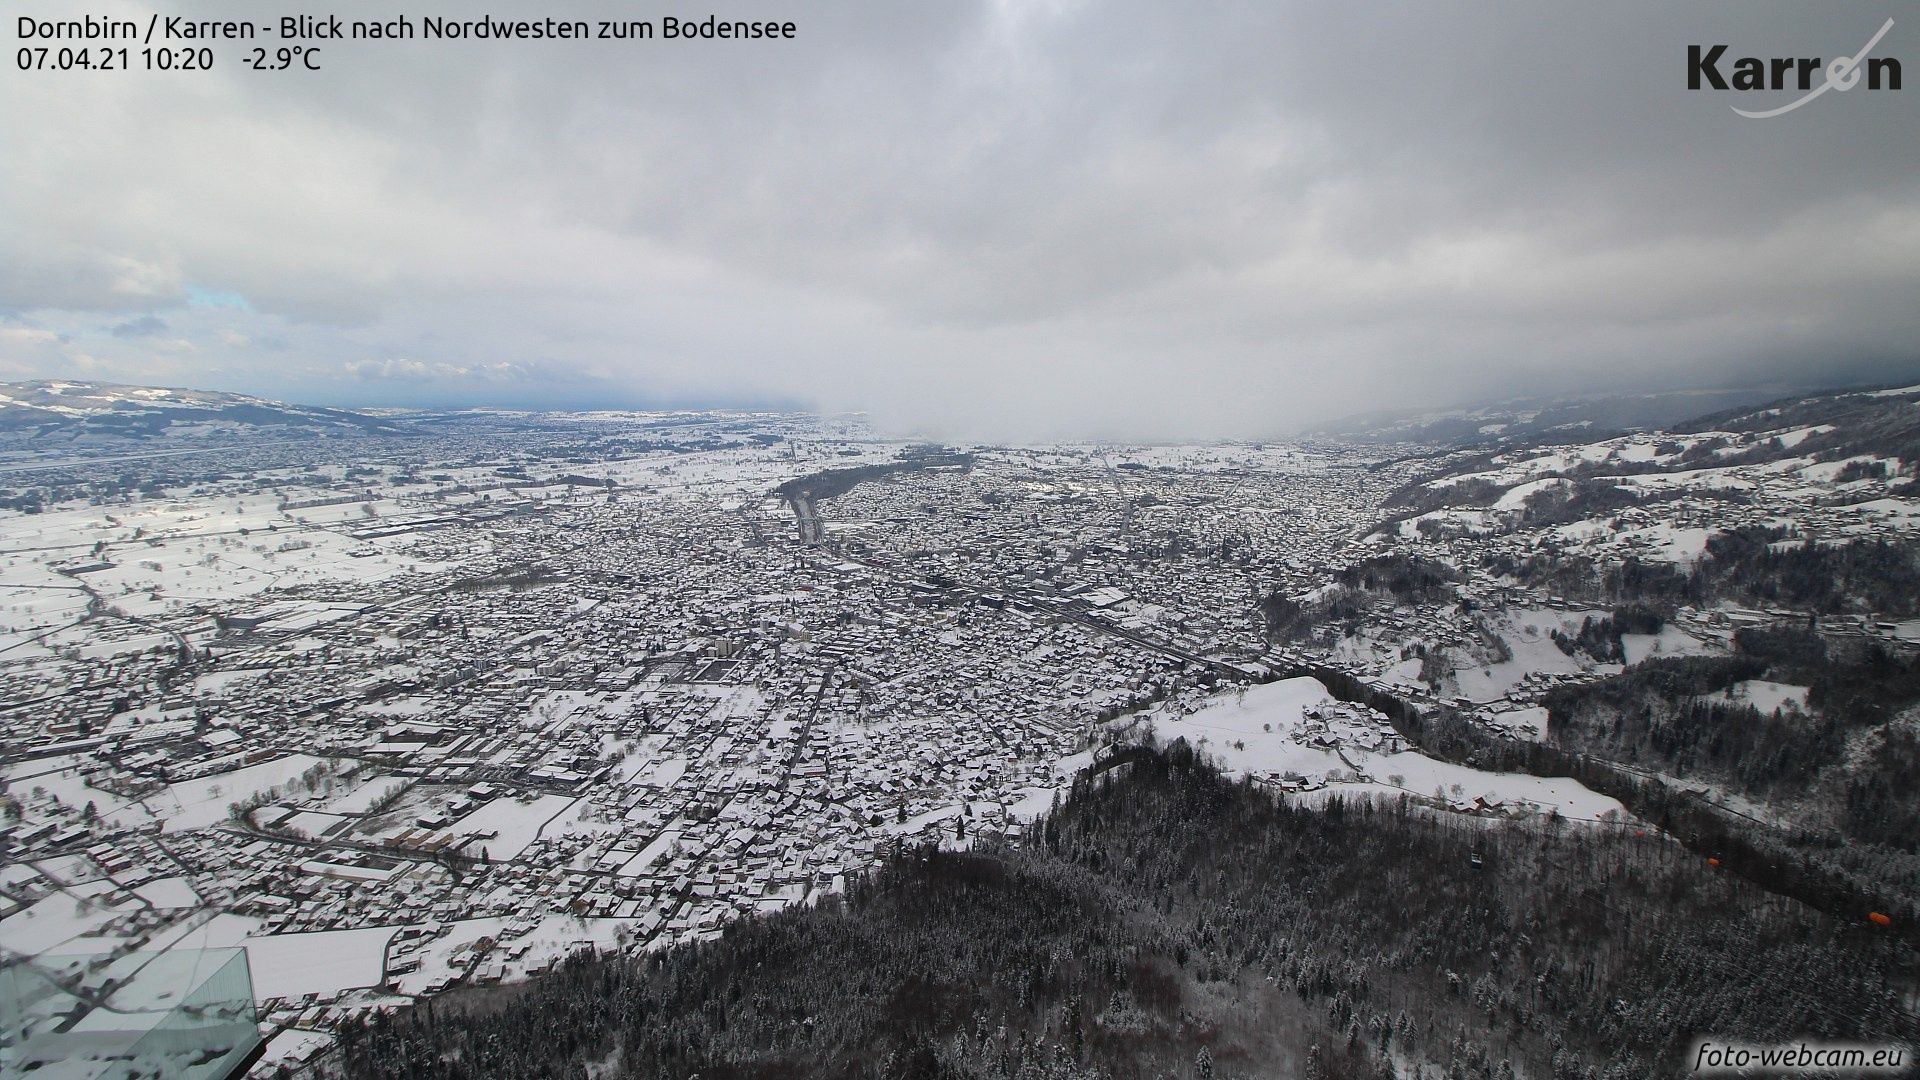 Even in Dornbirn in the Rhine Valley it is white again (foto-webcam.eu)